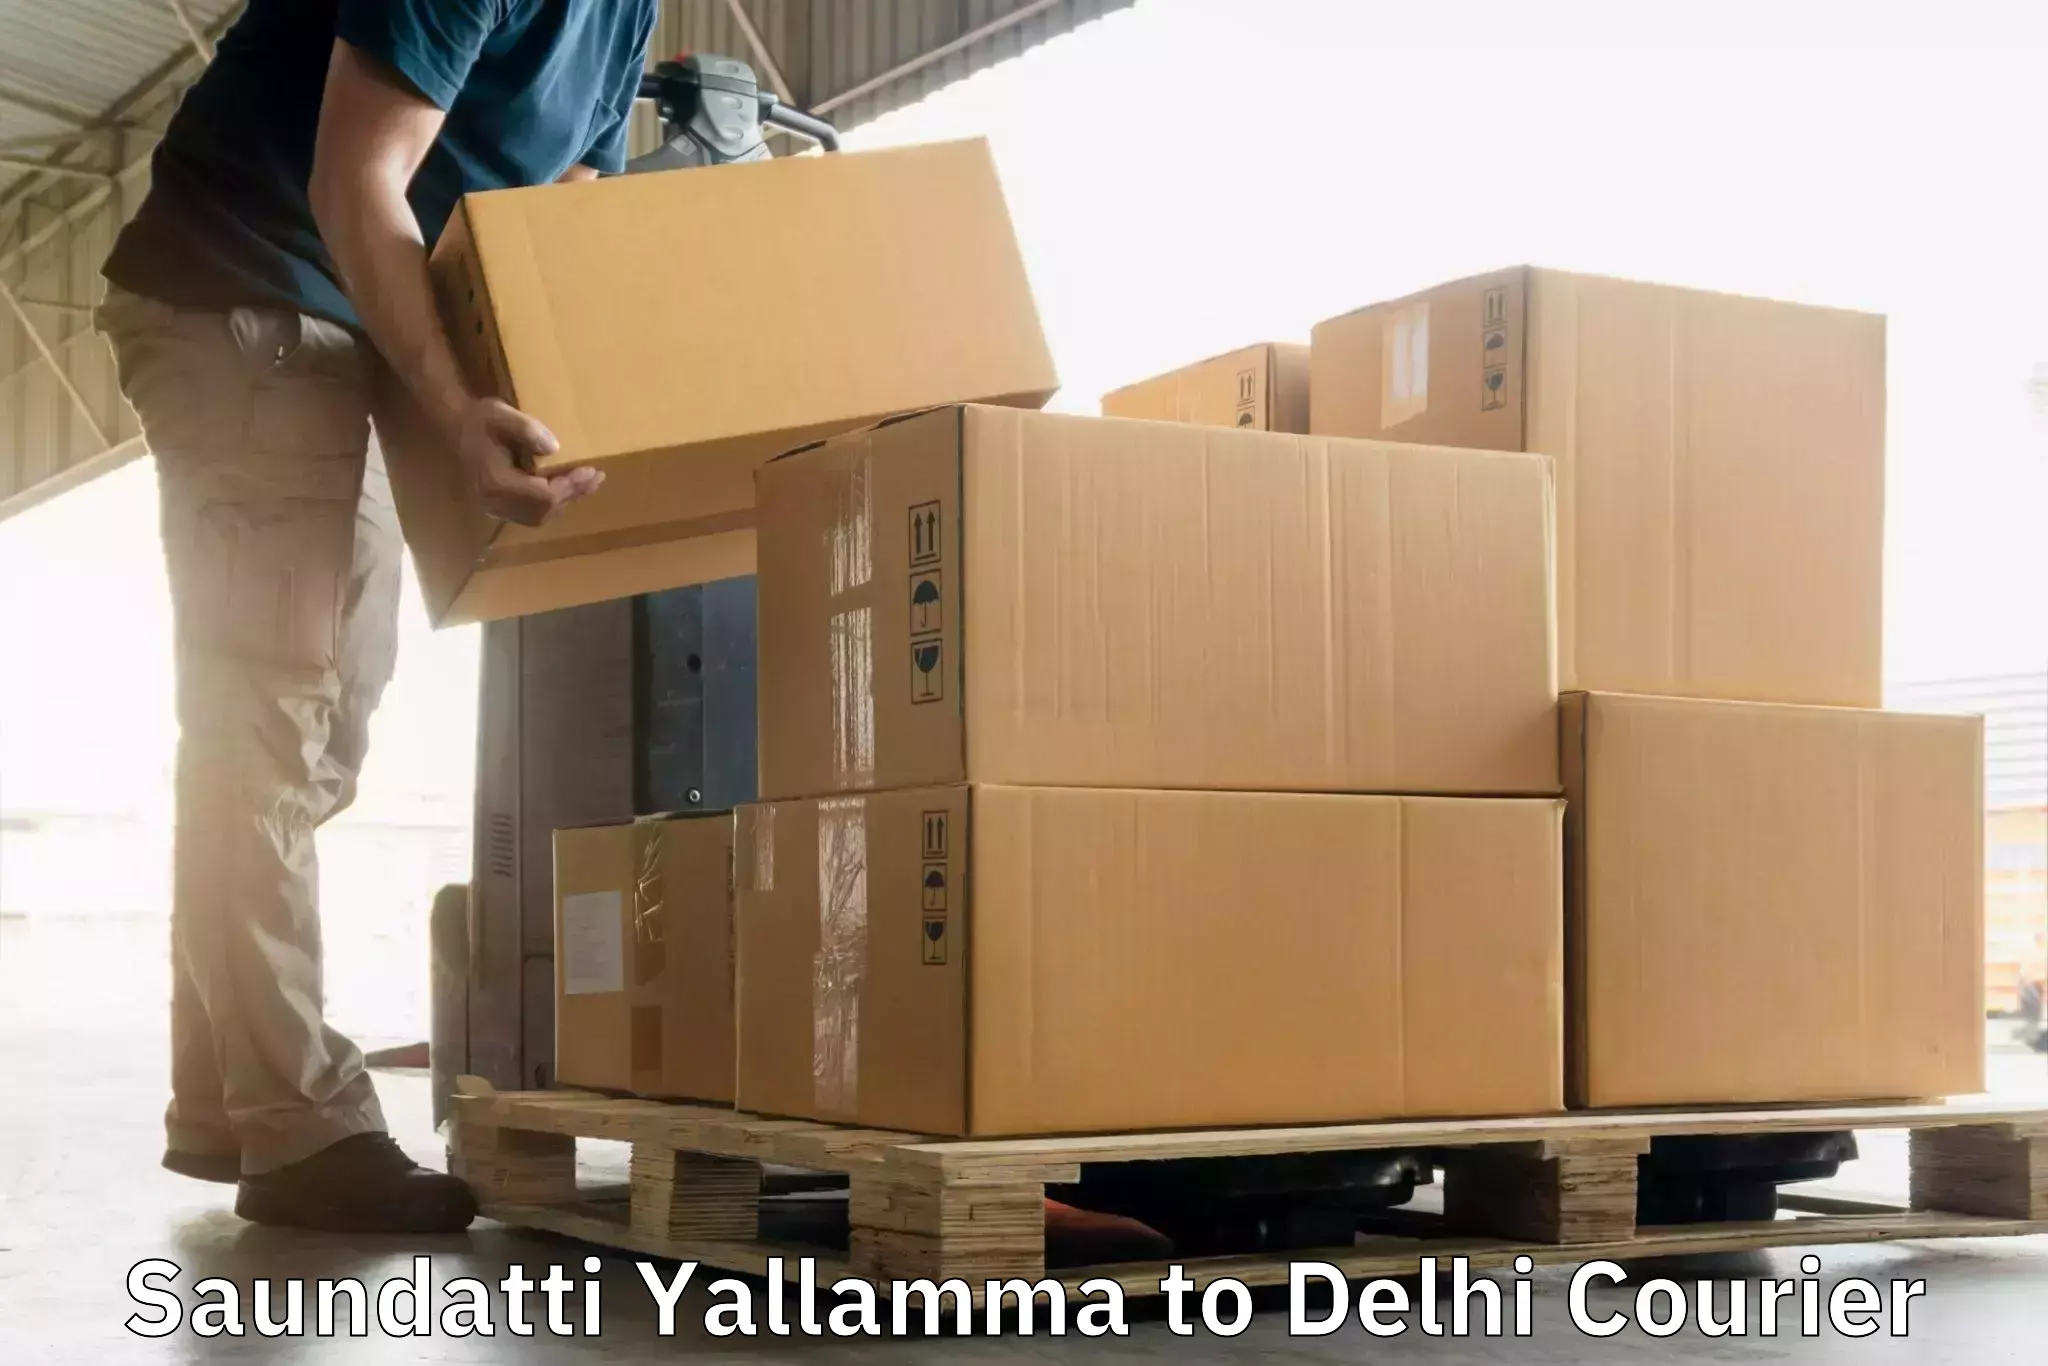 Same-day delivery options Saundatti Yallamma to Jamia Millia Islamia New Delhi